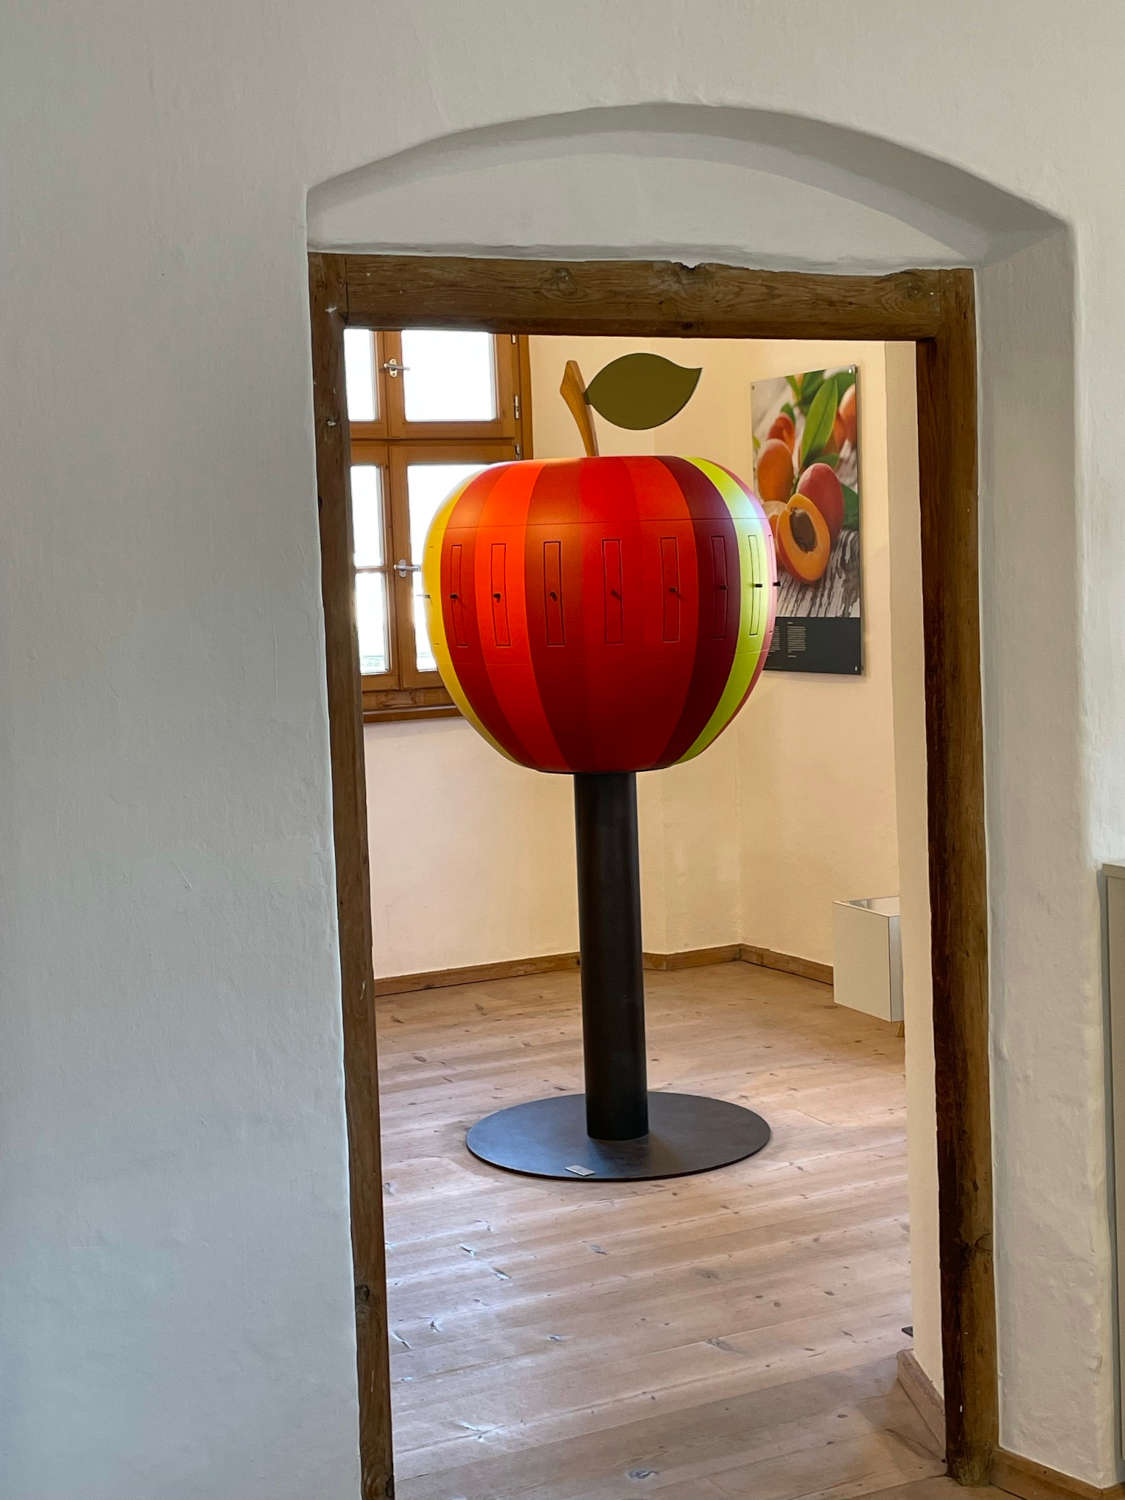 Apfel-Lana-Obstbaumuseum